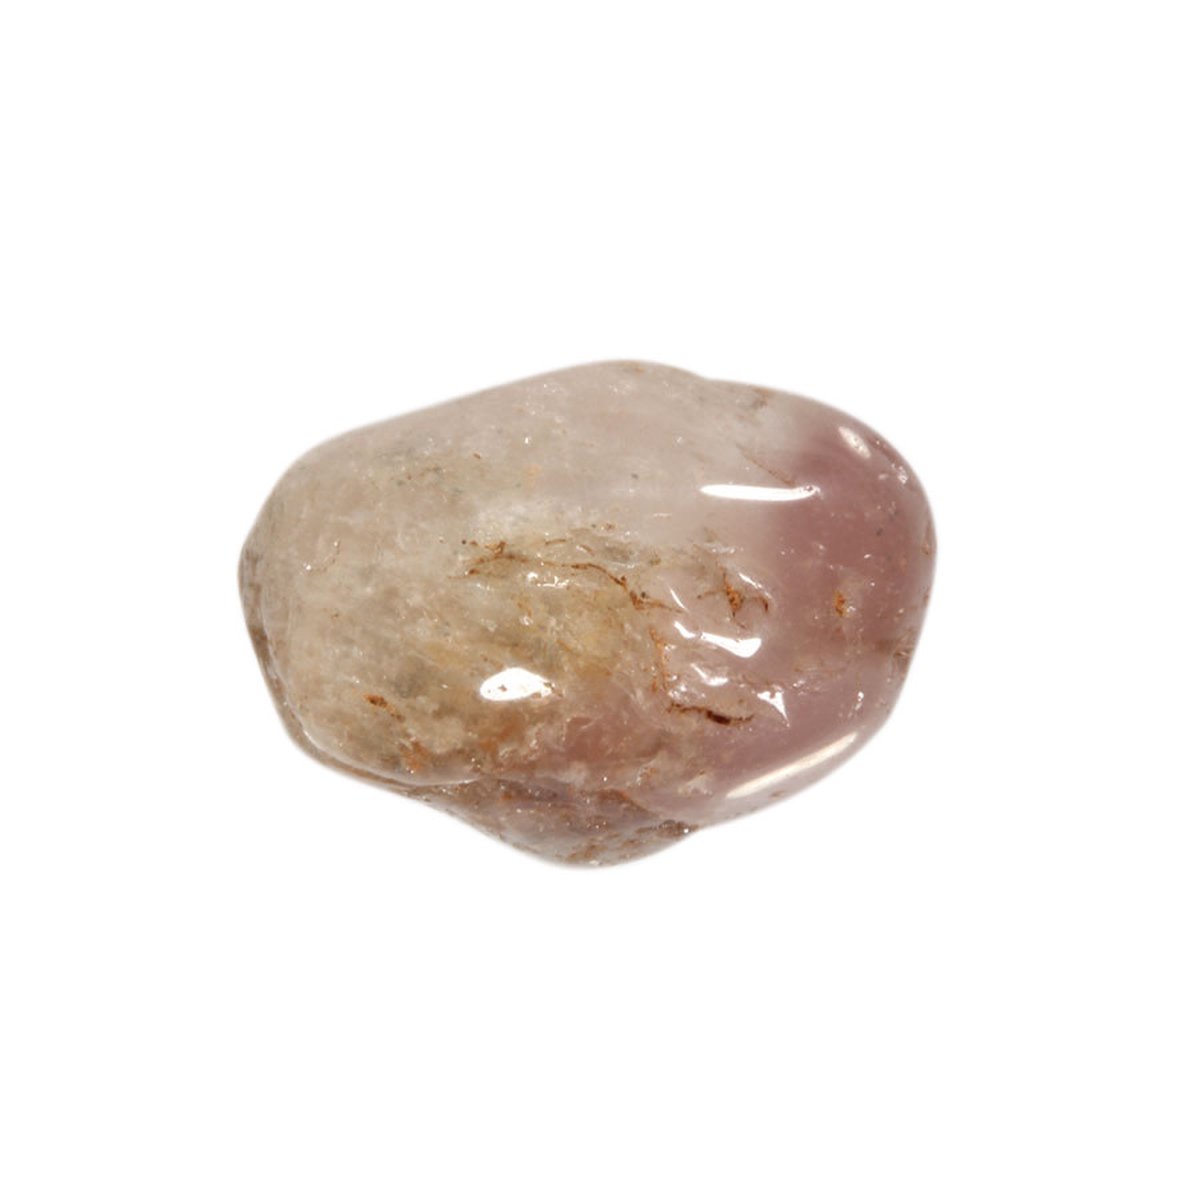 Lithiumkwarts steen getrommeld 20 - 30 gram